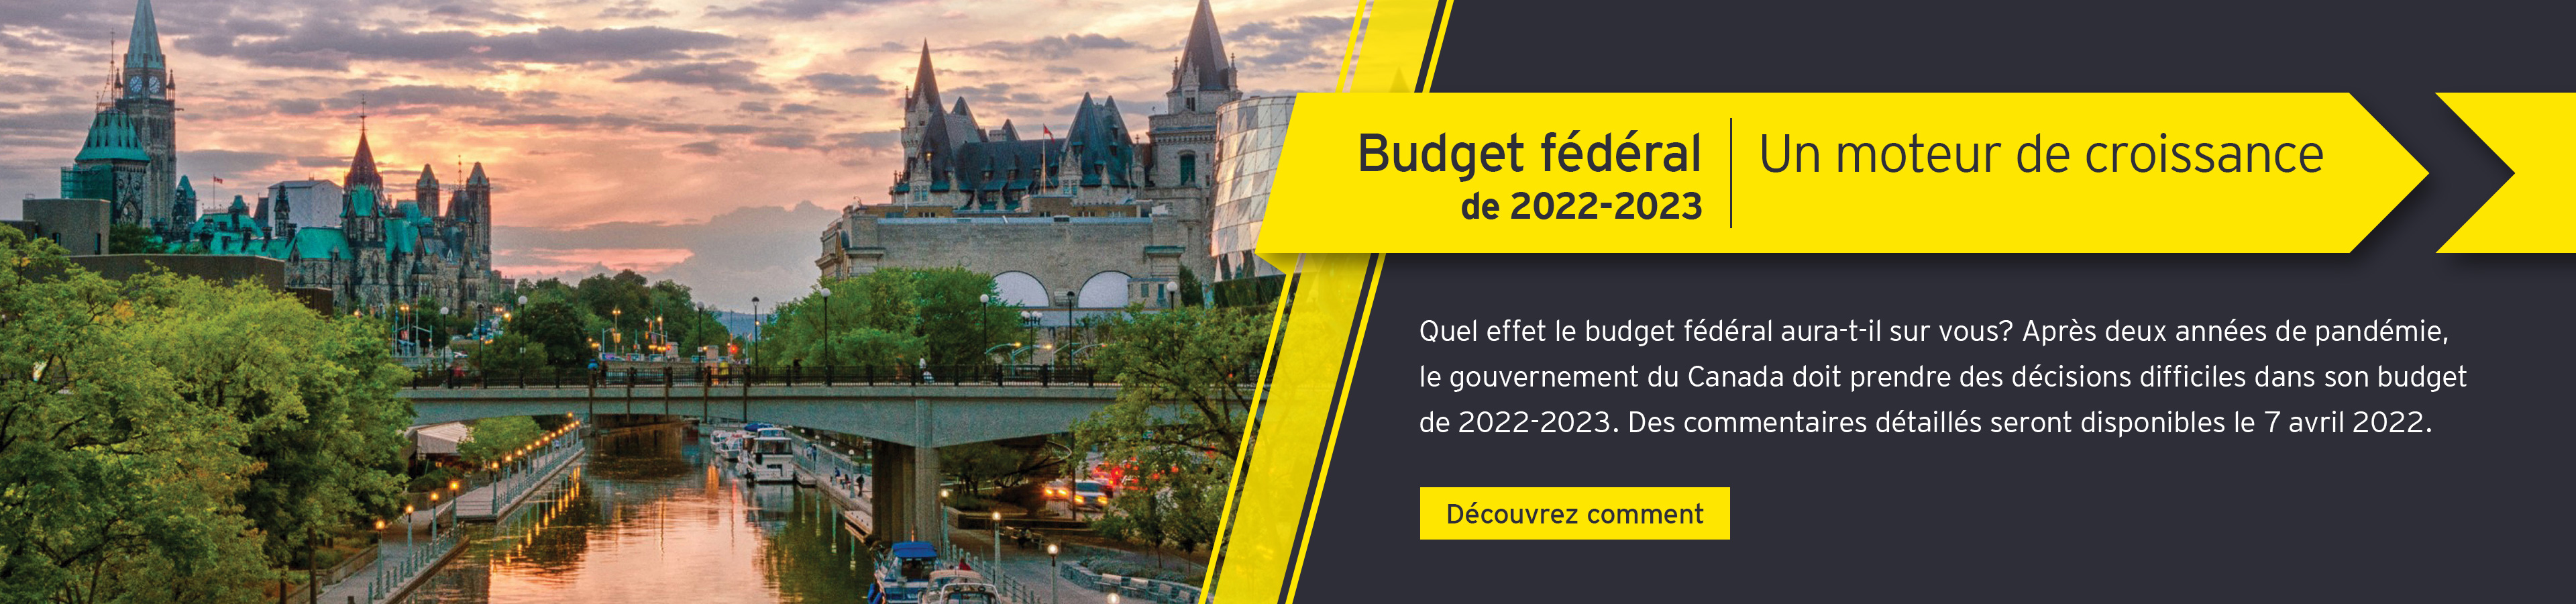 Budget fédéral de 2022 - Quel effet le budget fédéral aura-t-il sur vous?  Découvrez comment